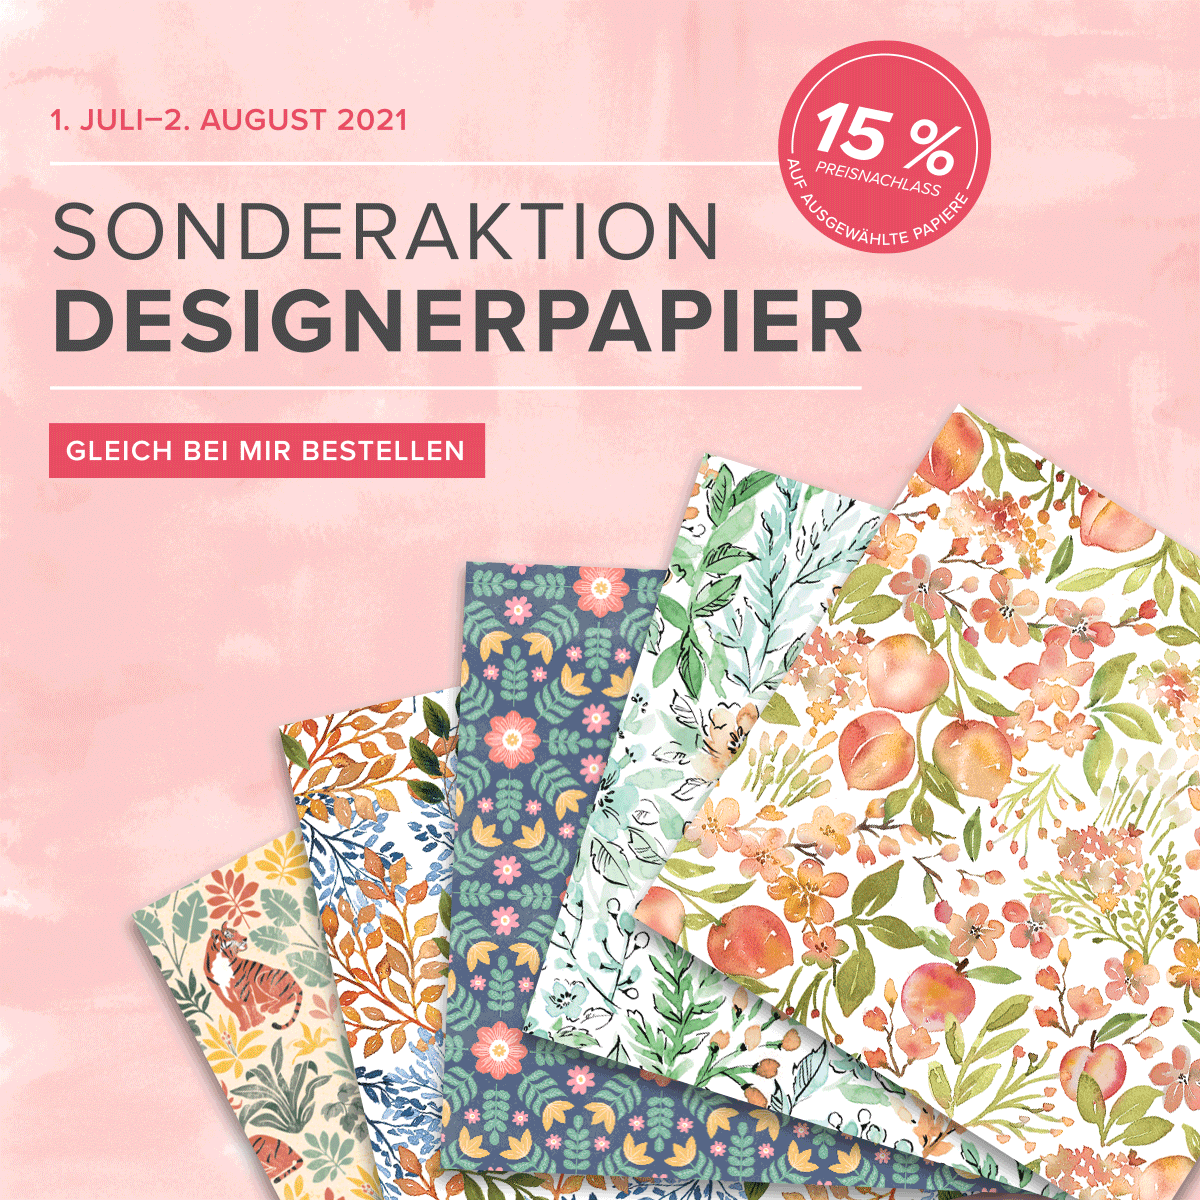 You are currently viewing Sonderaktion Designerpapier, zugreifen und sparen